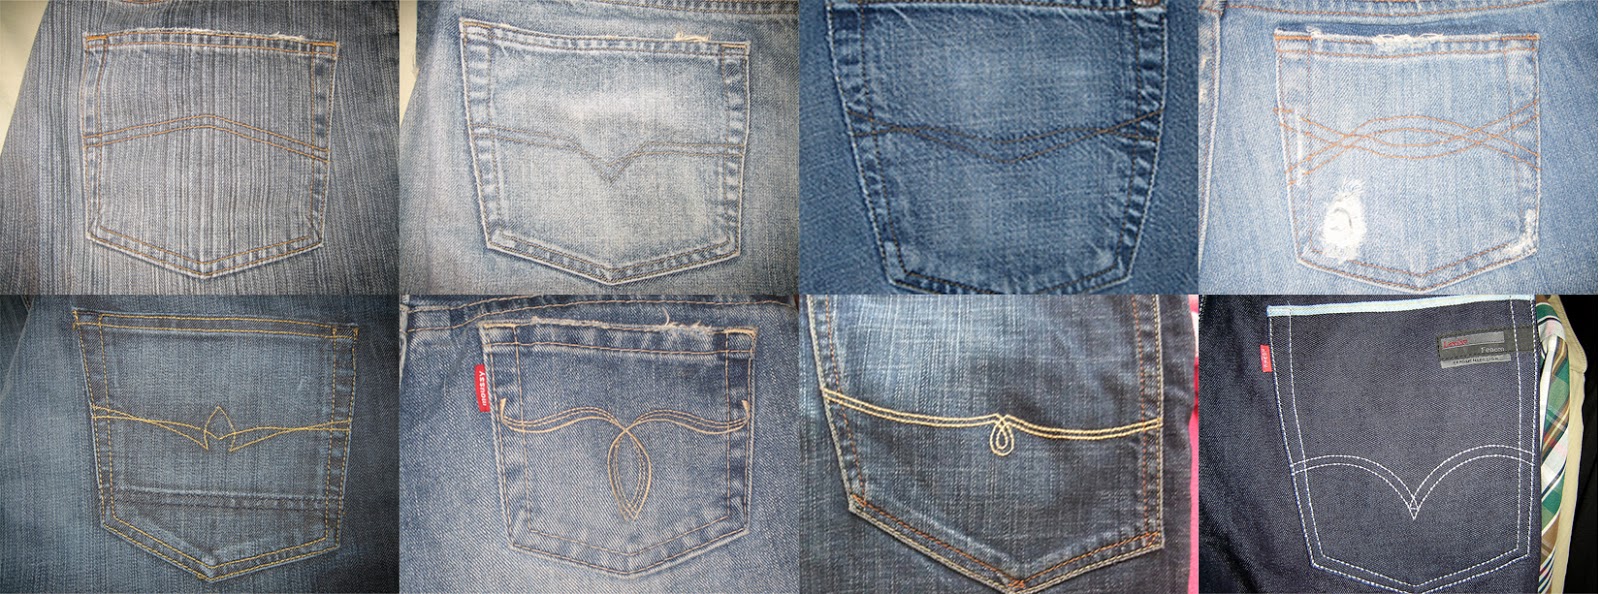 levis jeans back pocket design